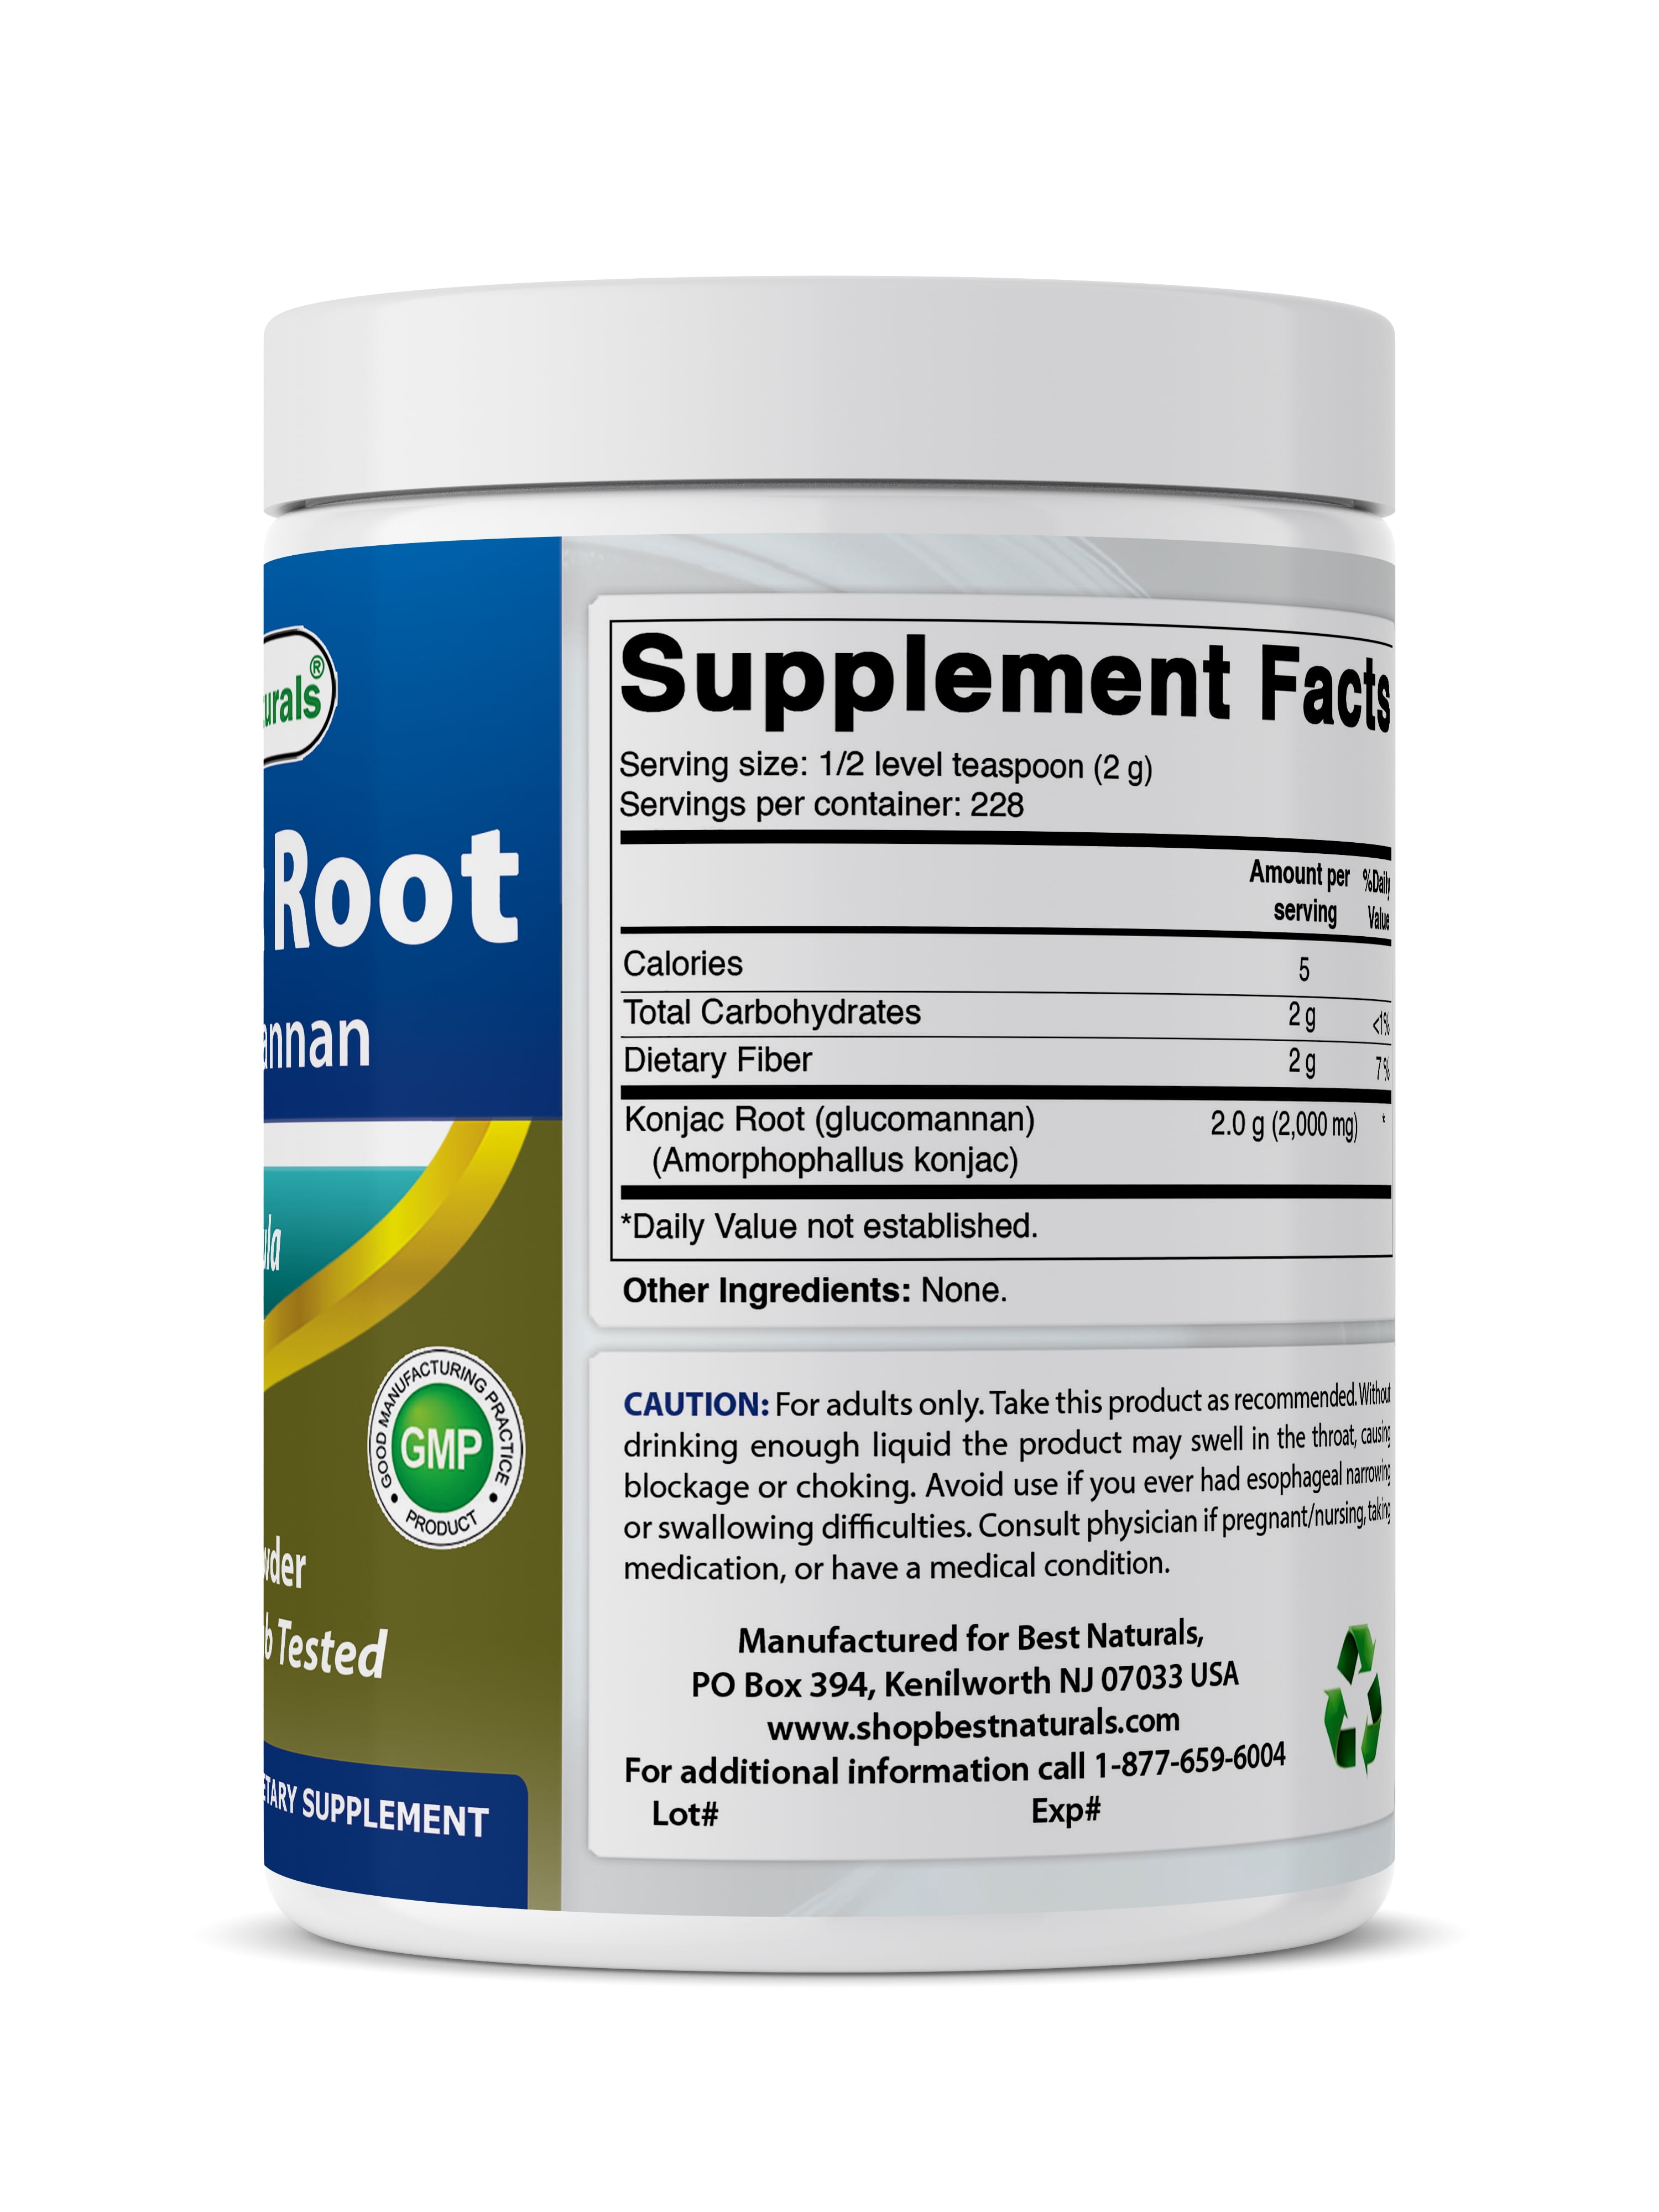 Best Naturals Konjac Root Weight Management Supplement, 2,000 mg Glucomannan,  1 lb - Walmart.com